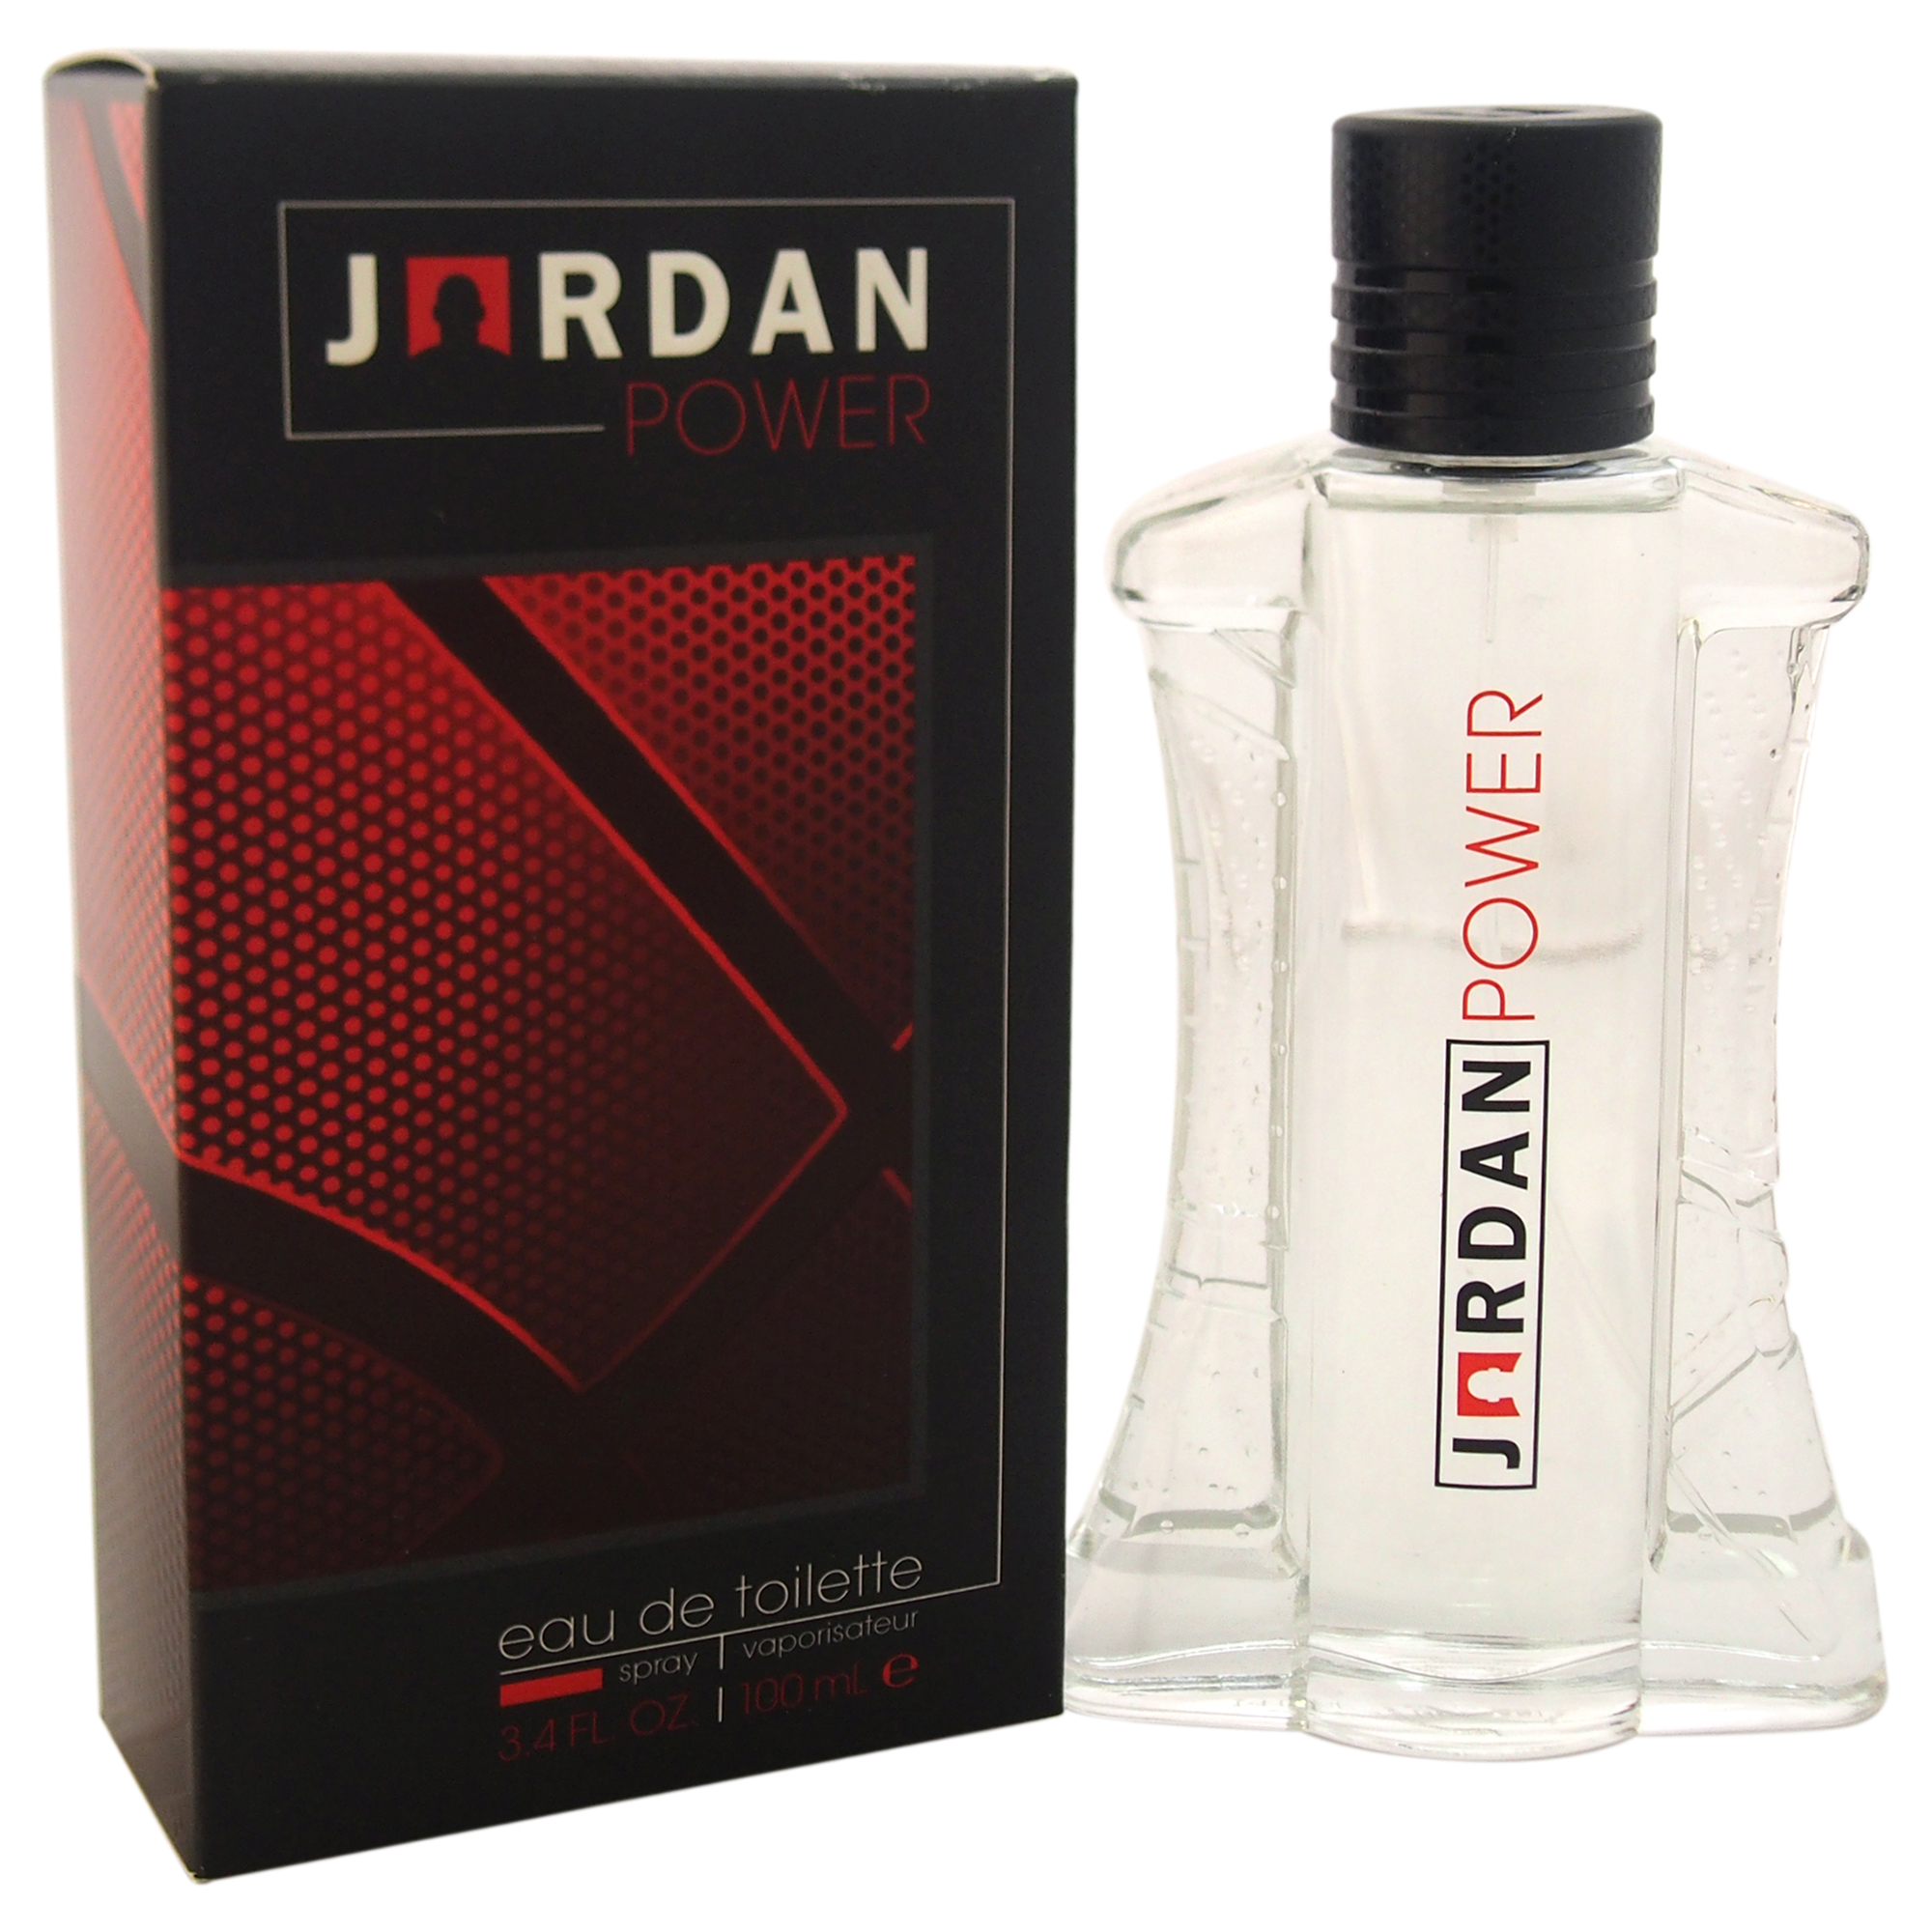 Jordan Power by Michael Jordan for Men - 3.4 oz EDT Spray